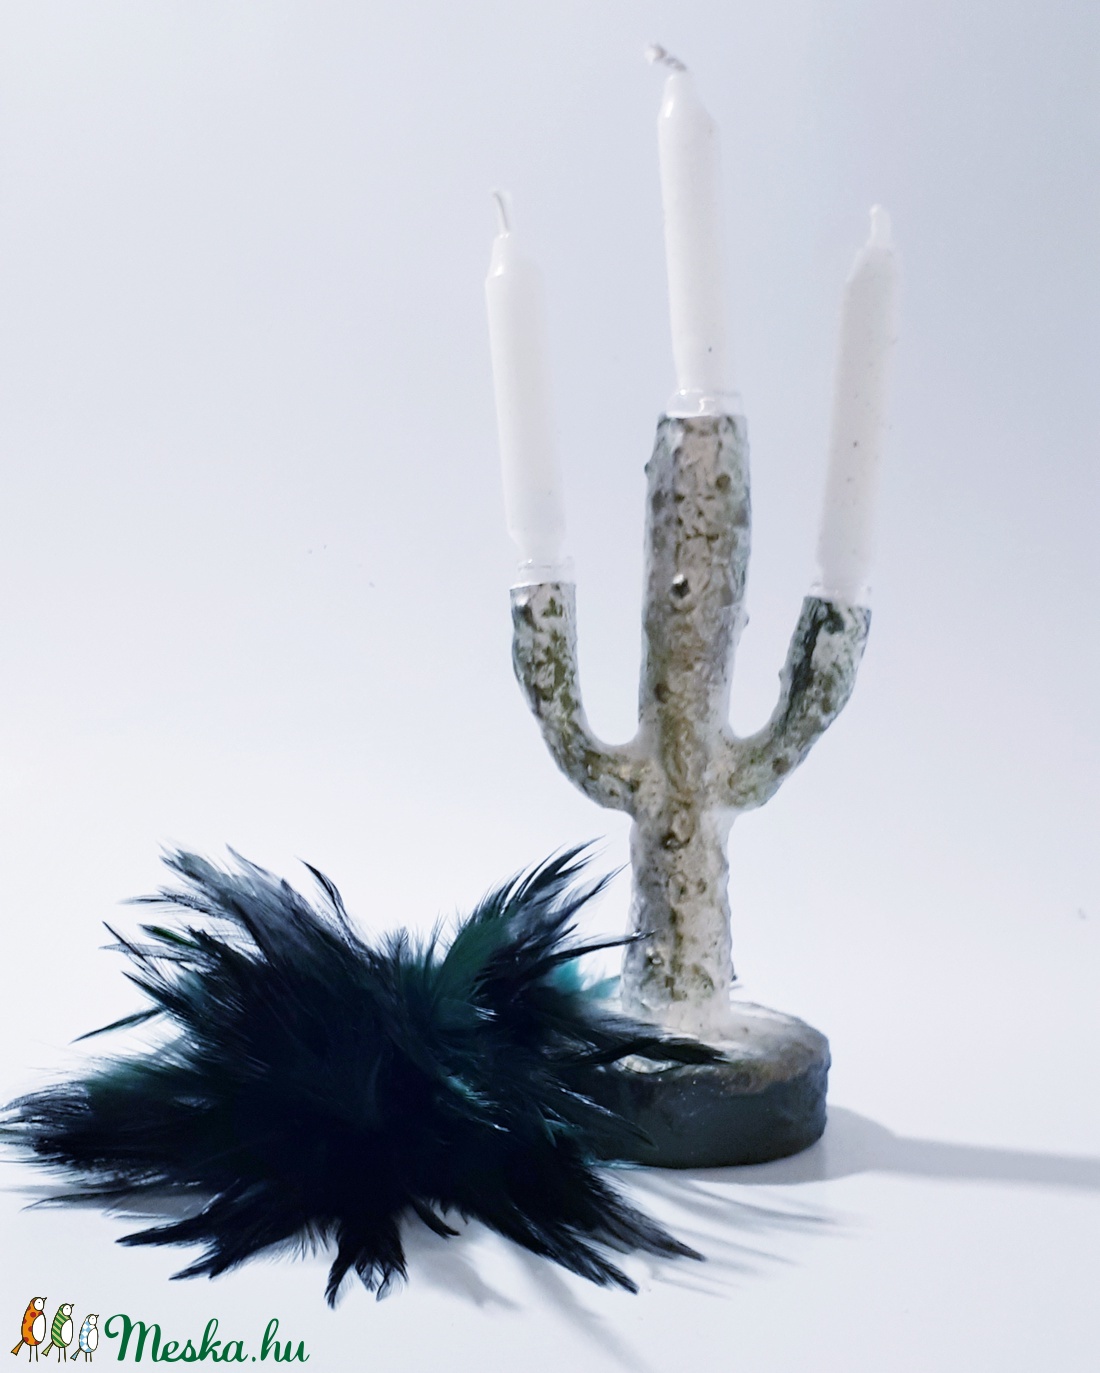 Kaktusz 3 ágú üveg gyertyatartó fehér gyertyával, ajándék kaktusz kedvelőknek. - esküvő - dekoráció - gyertya & gyertyatartó - Meska.hu